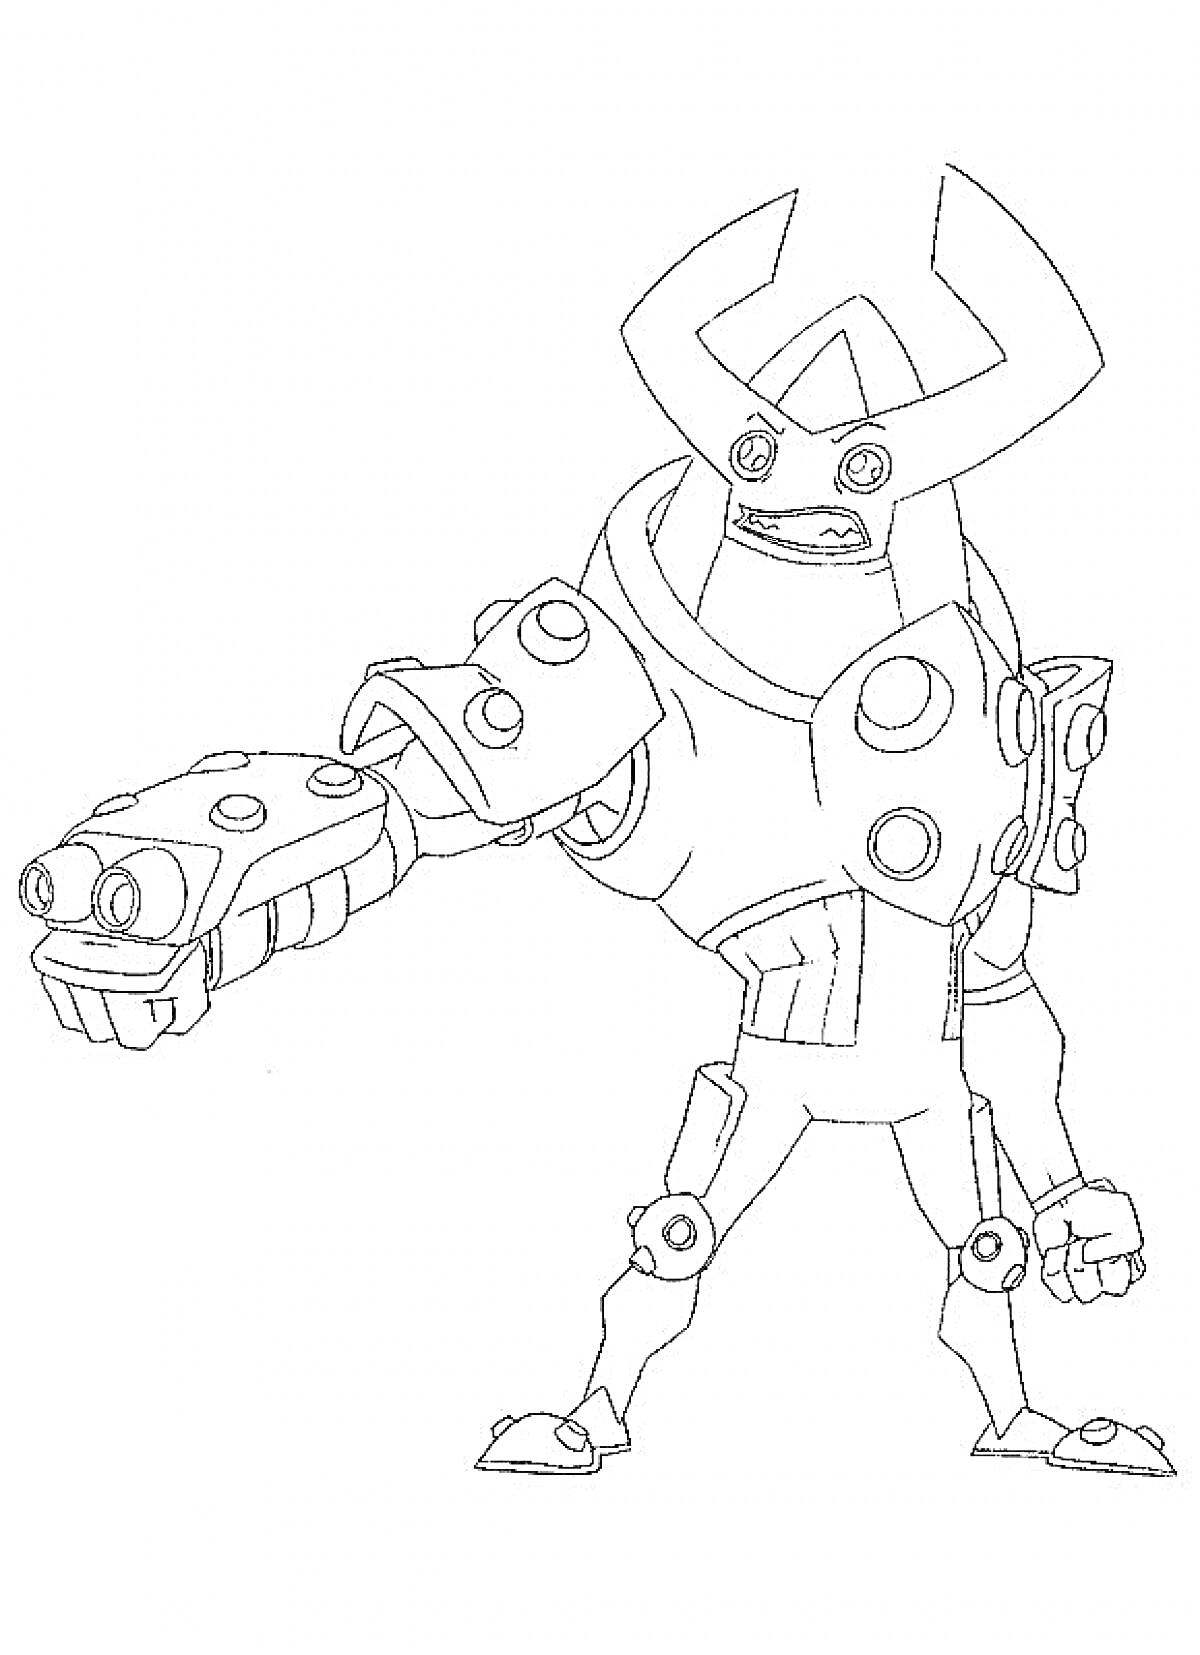 Раскраска Робот-боец из игры Brawl Stars с протянутой рукой и гранатометом